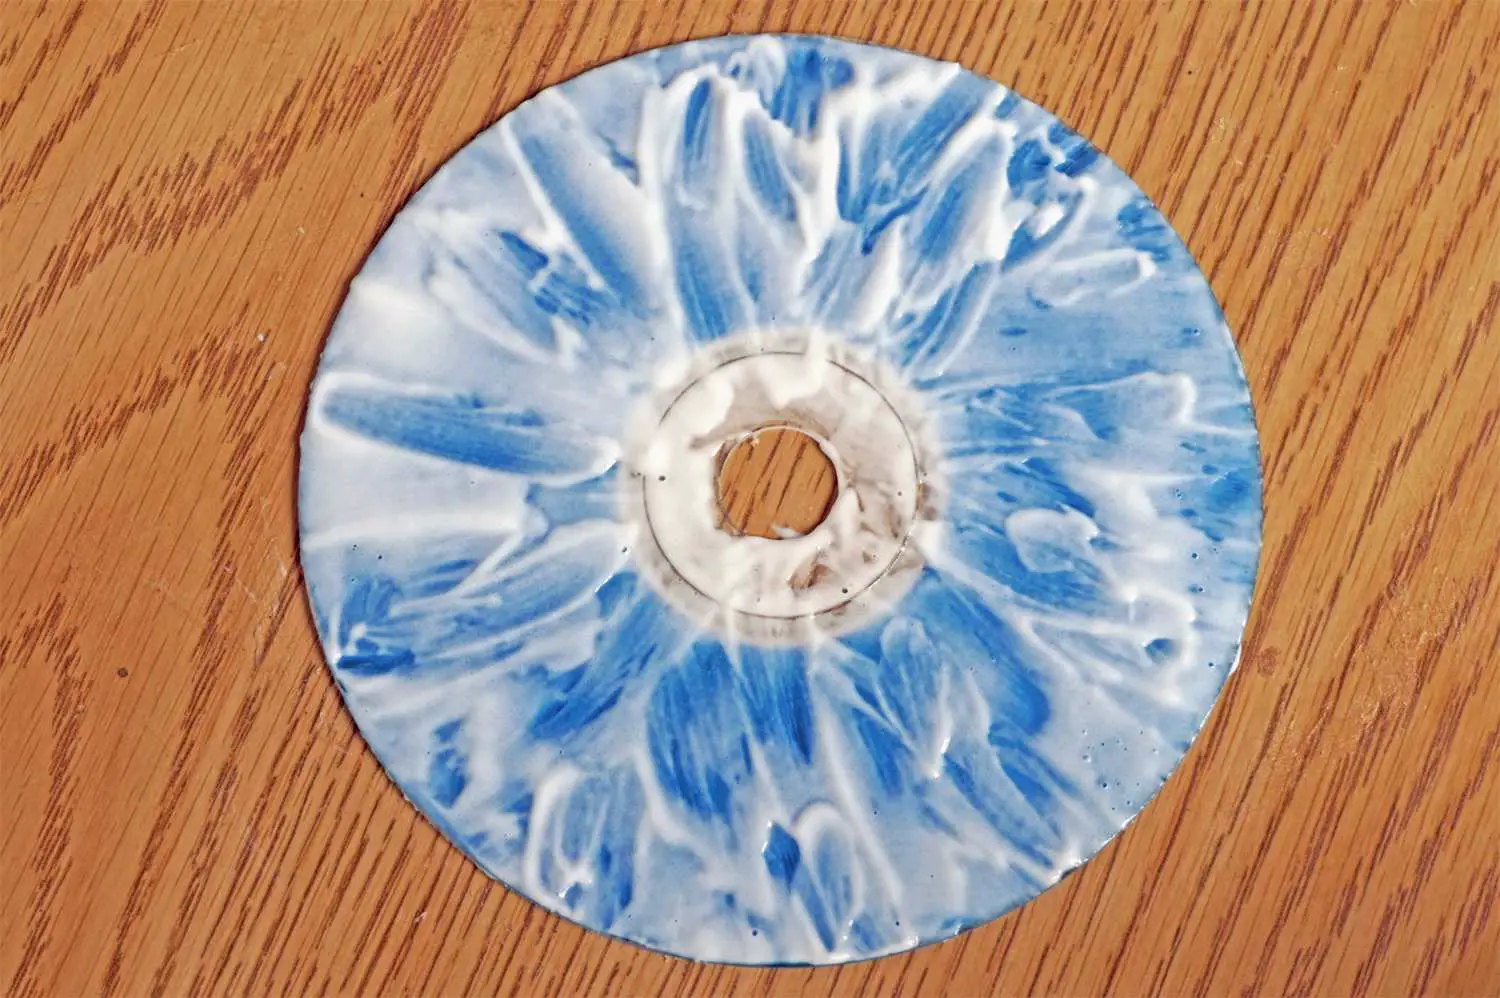 CD arranhado coberto de pasta de dente